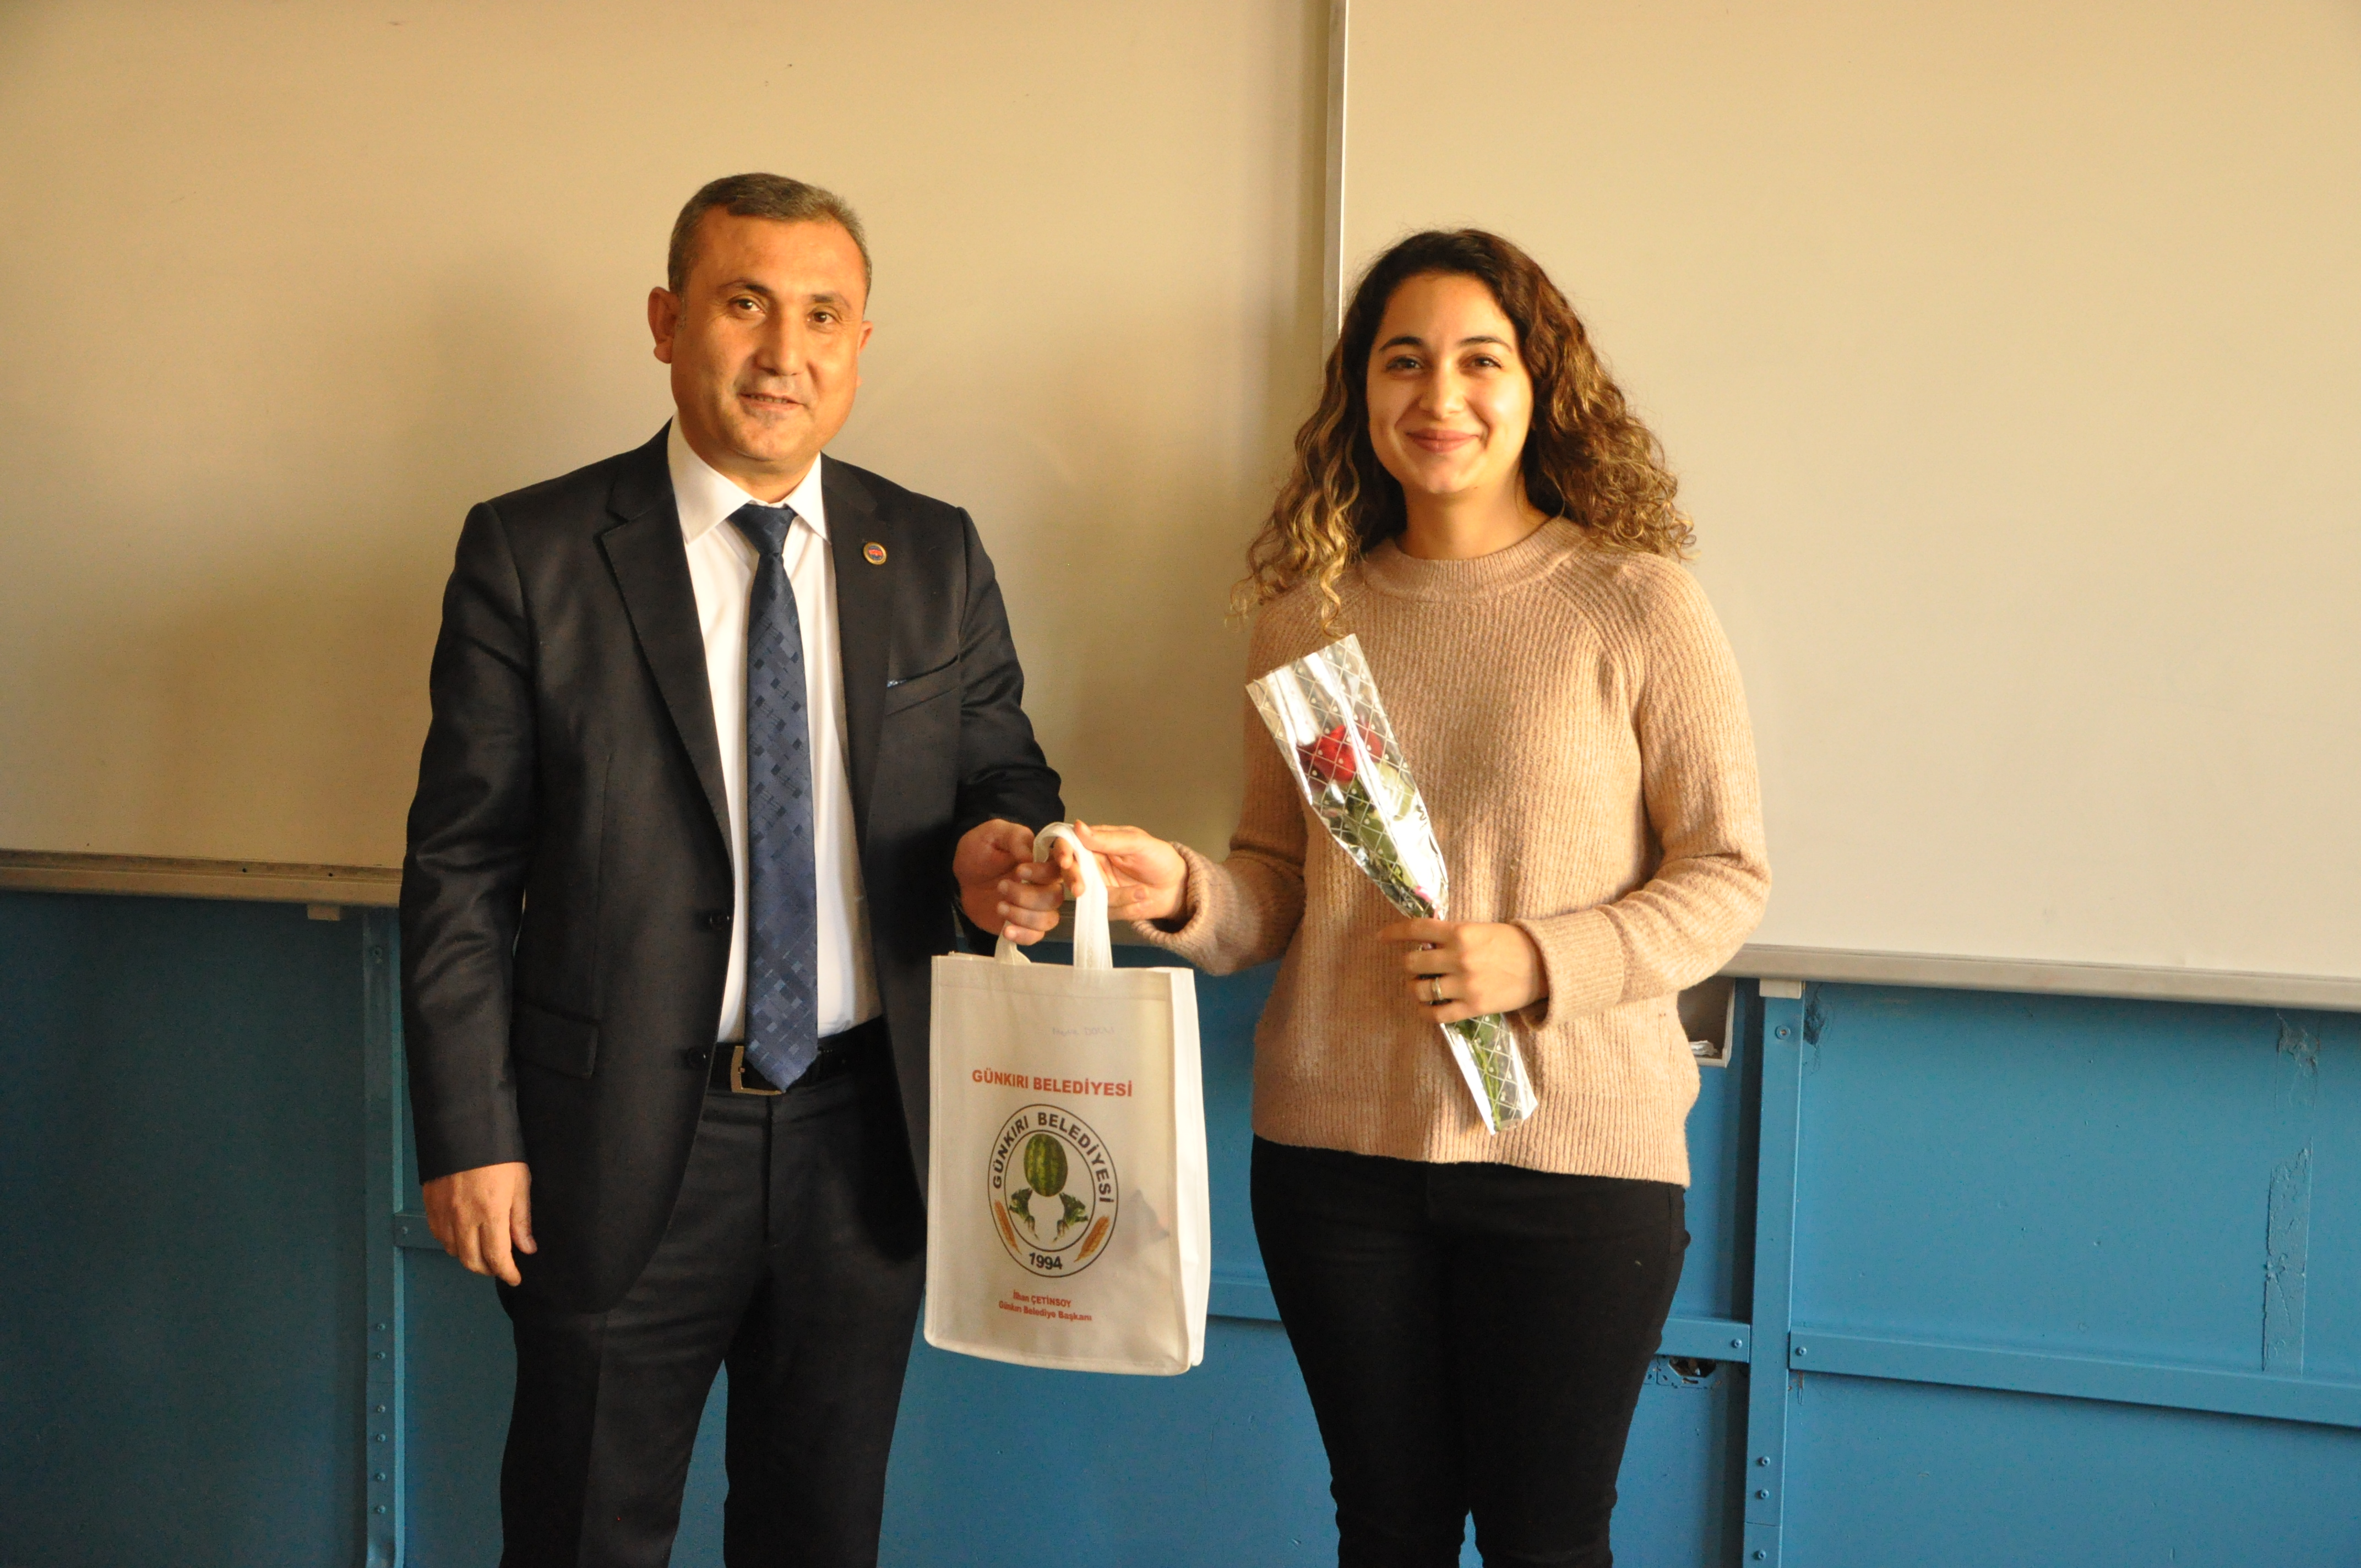 Günkırı Belediye Başkanı İlhan Çetinsoy, 24 Kasım Öğretmenler Günü münasebetiyle Günkırı Beldesinde görev yapan öğretmenler için düzenlediği yemekli programda öğretmenlerle bir araya geldi.